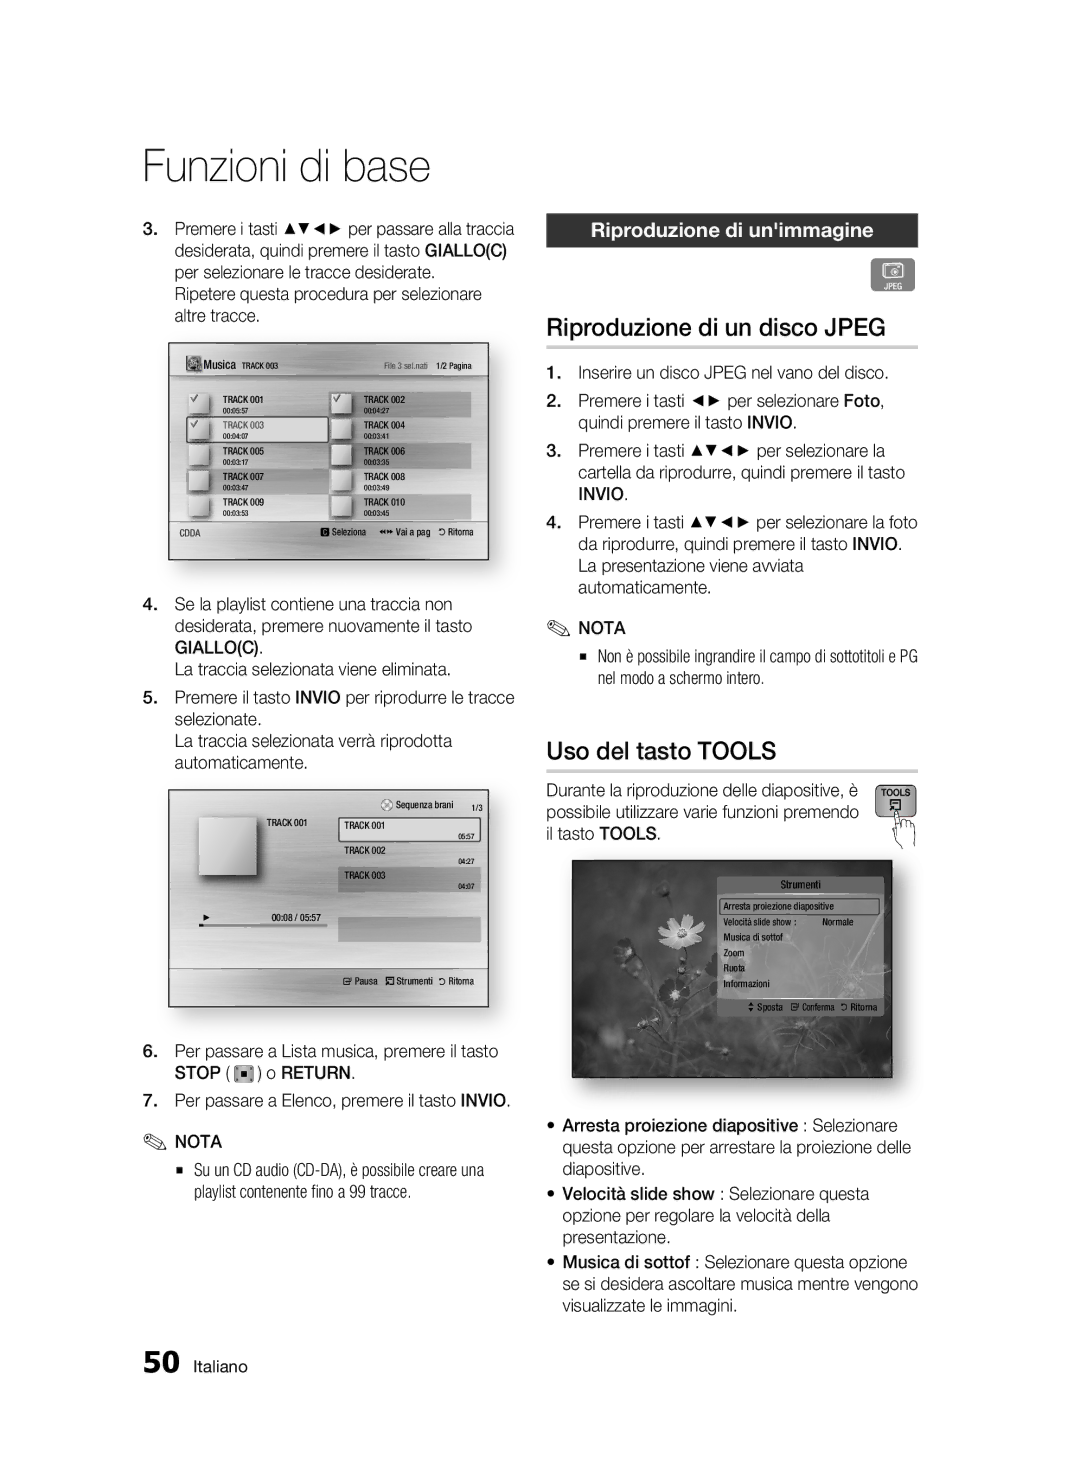 Samsung BD-C7500/XEF, BD-C7500/EDC manual Riproduzione di un disco Jpeg, Uso del tasto Tools, Riproduzione di unimmagine 